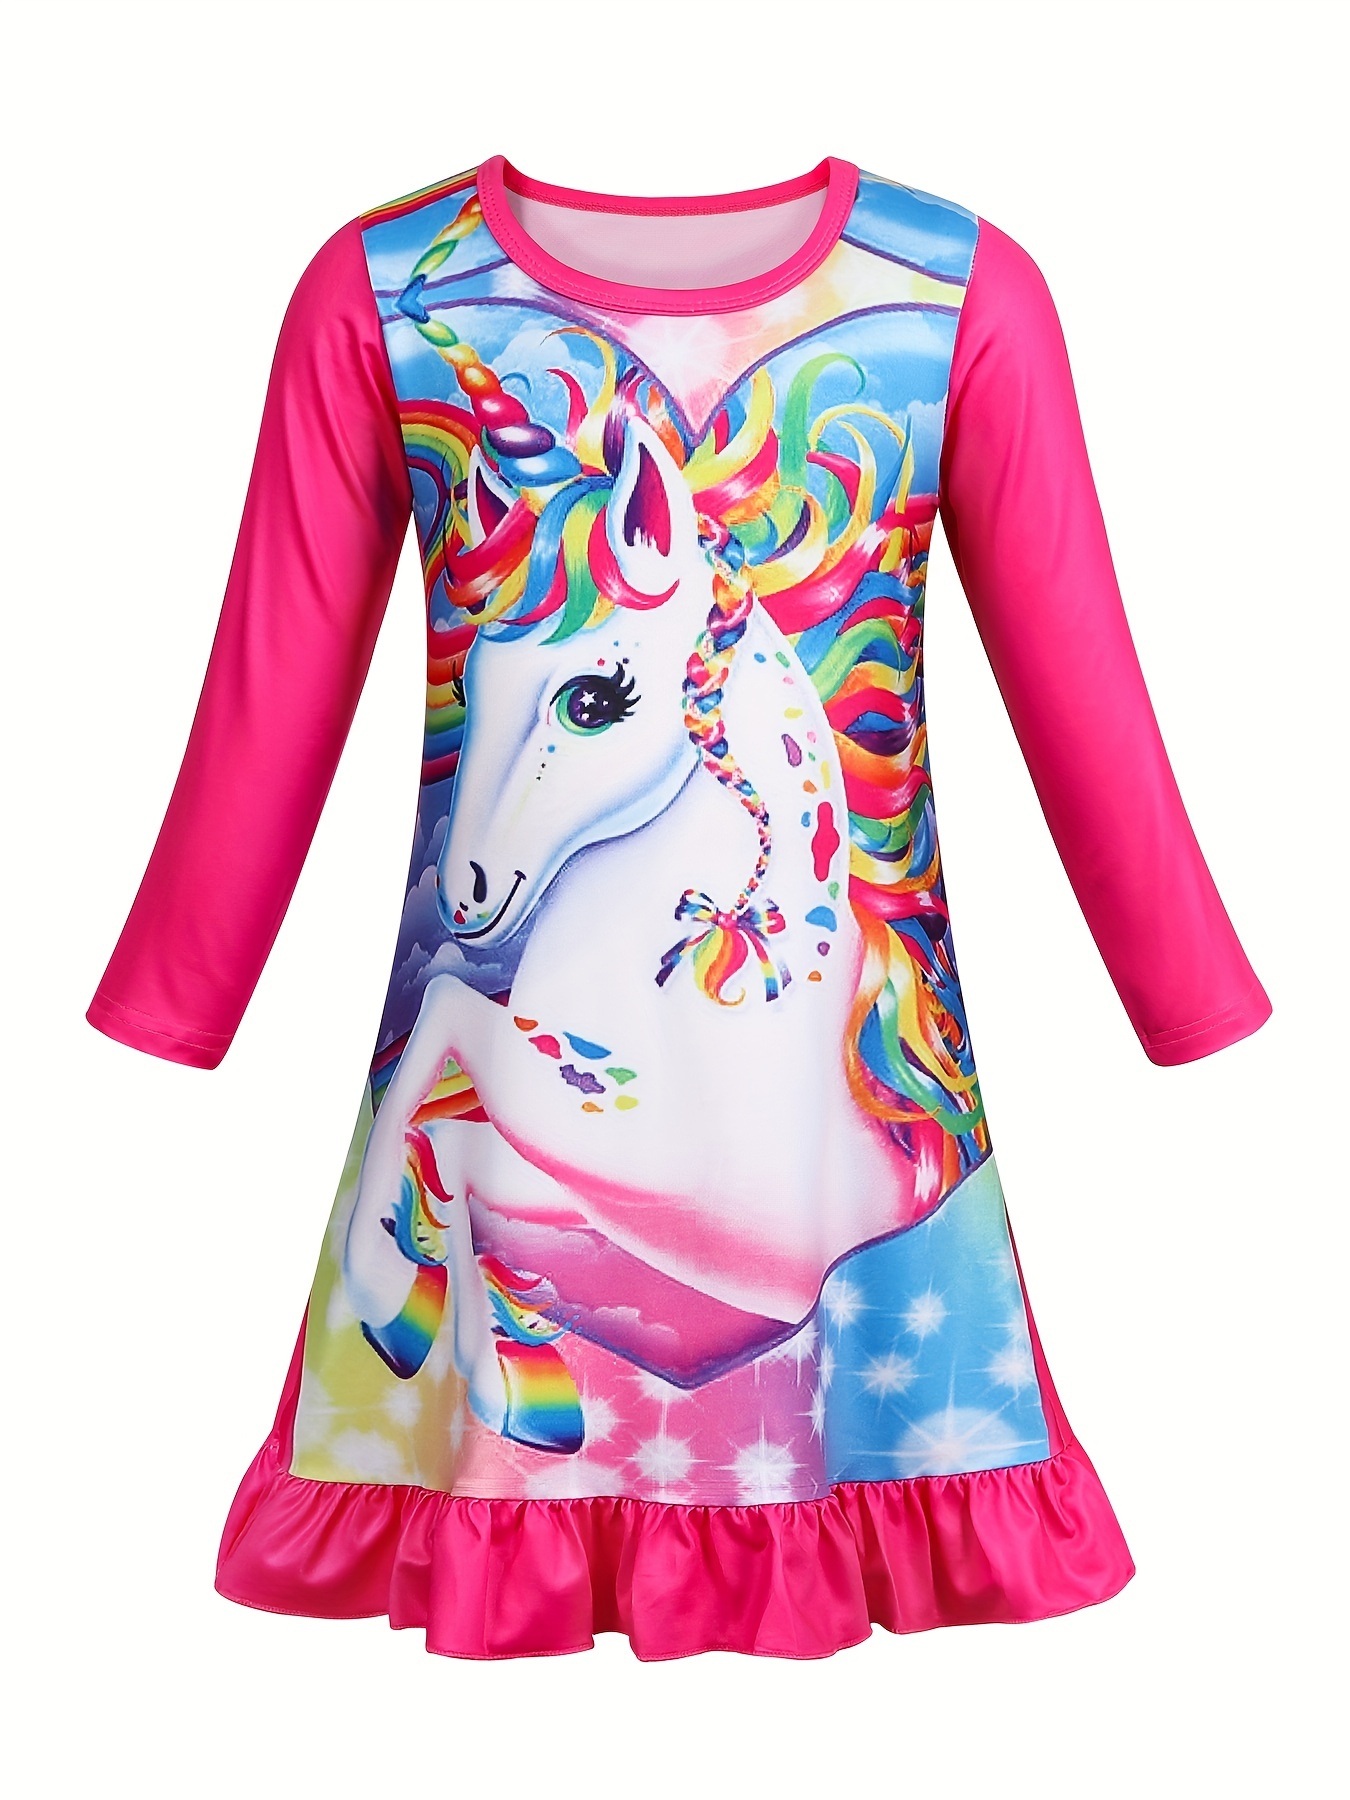 Kids Girls Roblox Short Sleeve Nightdress Dress Summer T-shirt Dress Pjs  Sleepwear